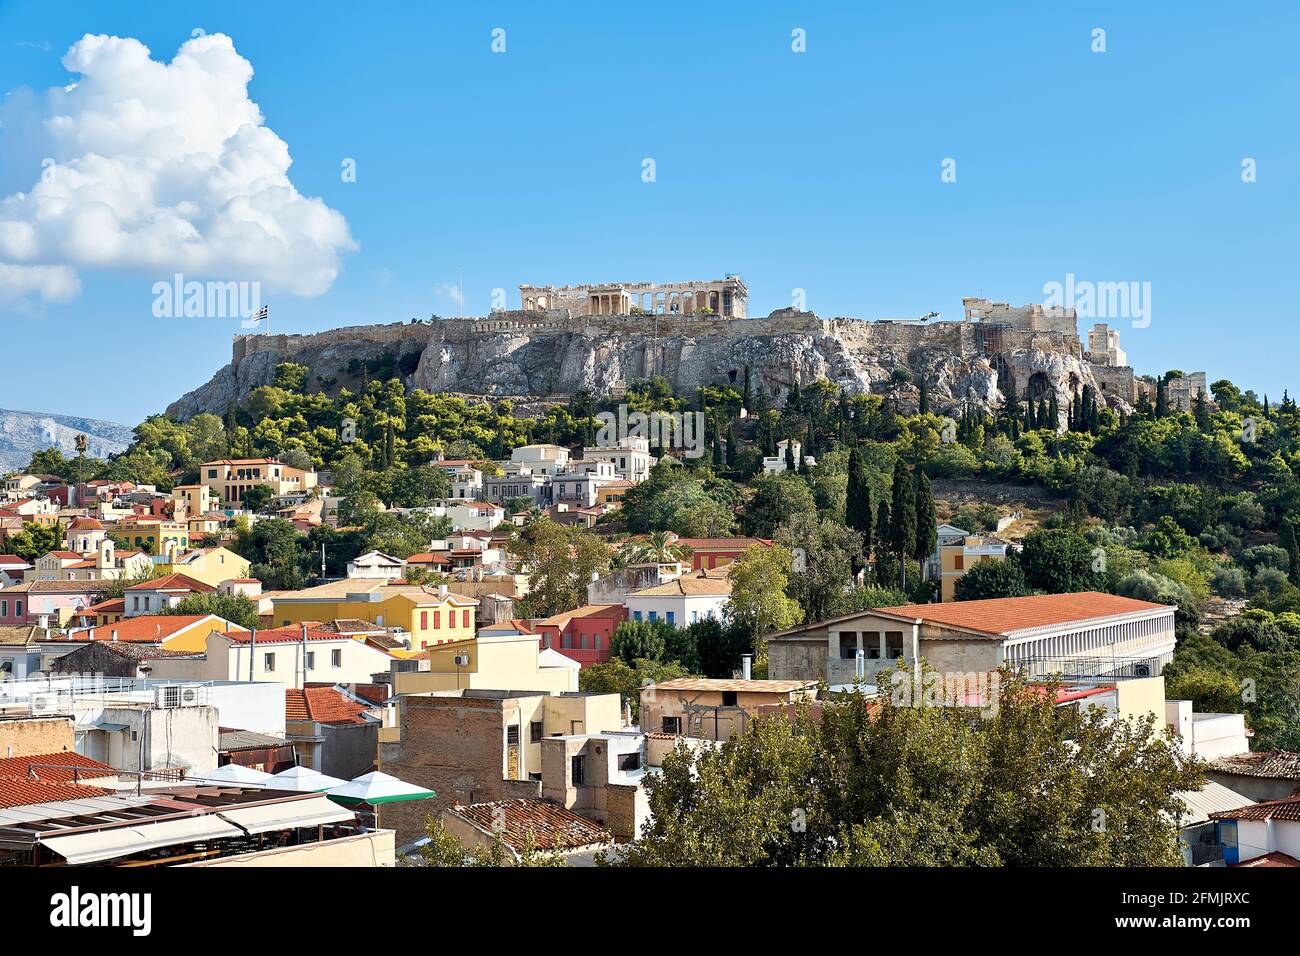 Akropolis-Hügel mit alten Tempeln und Dächern von Häusern in Athen, Griechenland, mit blauem Himmel. Stockfoto